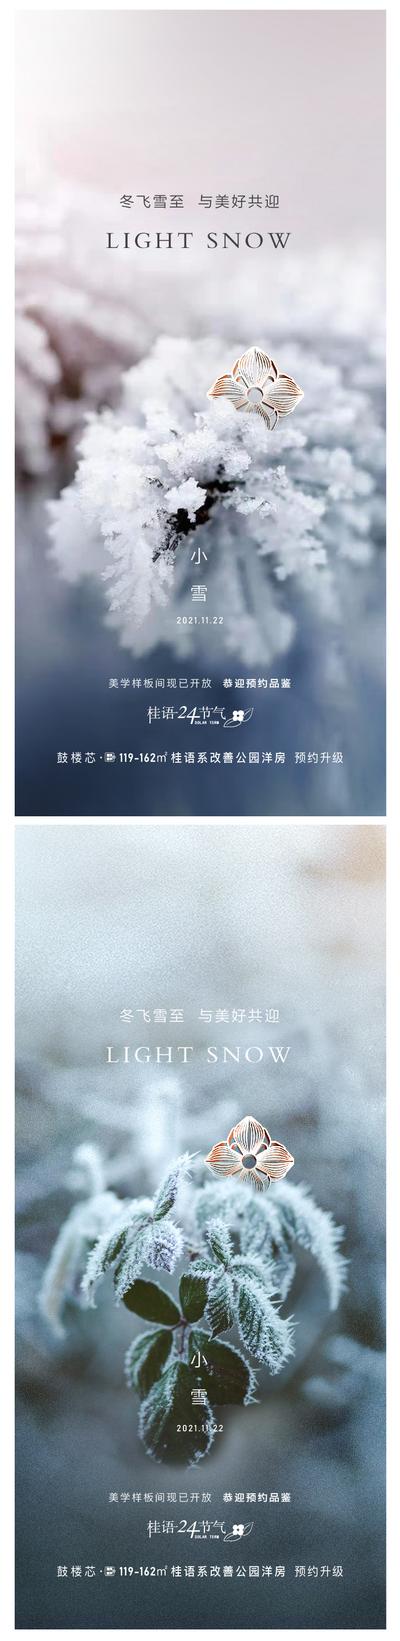 南门网 广告 海报 节气 小雪 小寒 大雪 品牌 寒冷 冬天